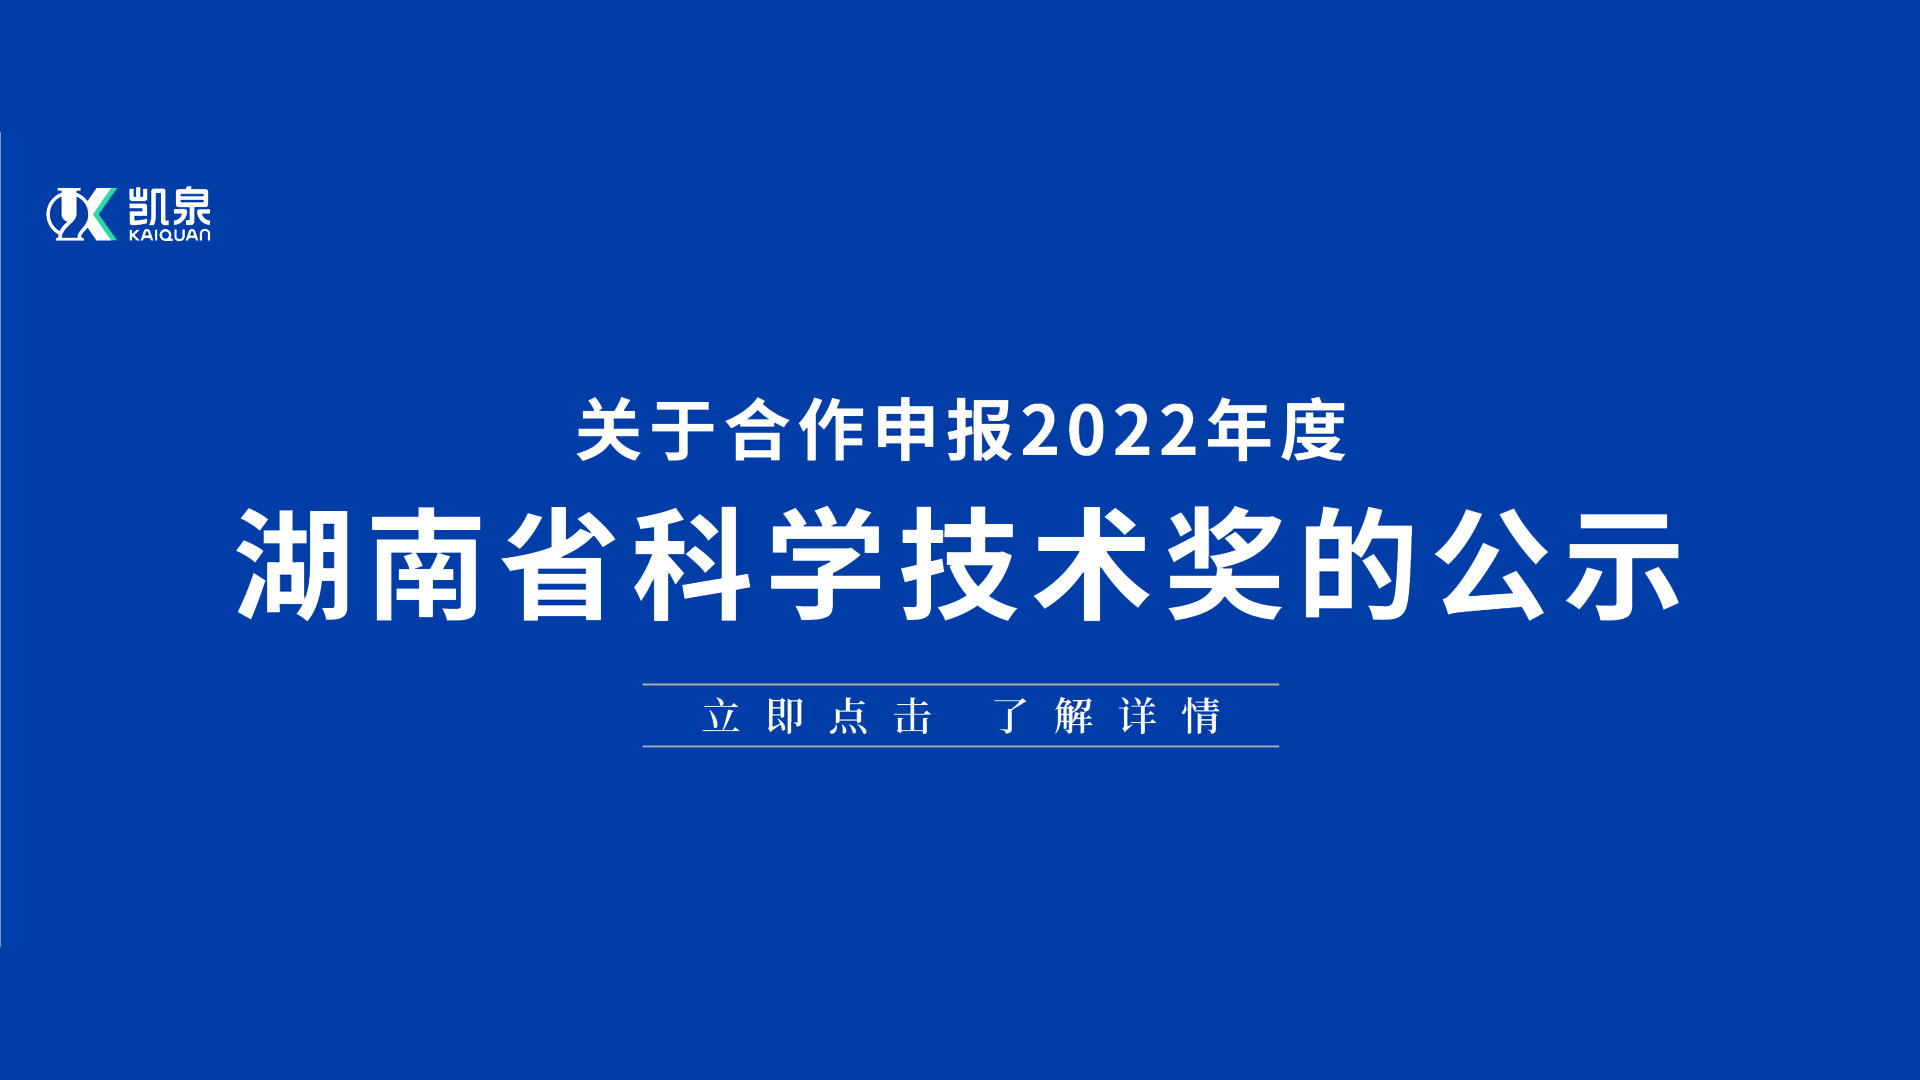 关于合作申报 2022 年度湖南省科学技术奖的公示